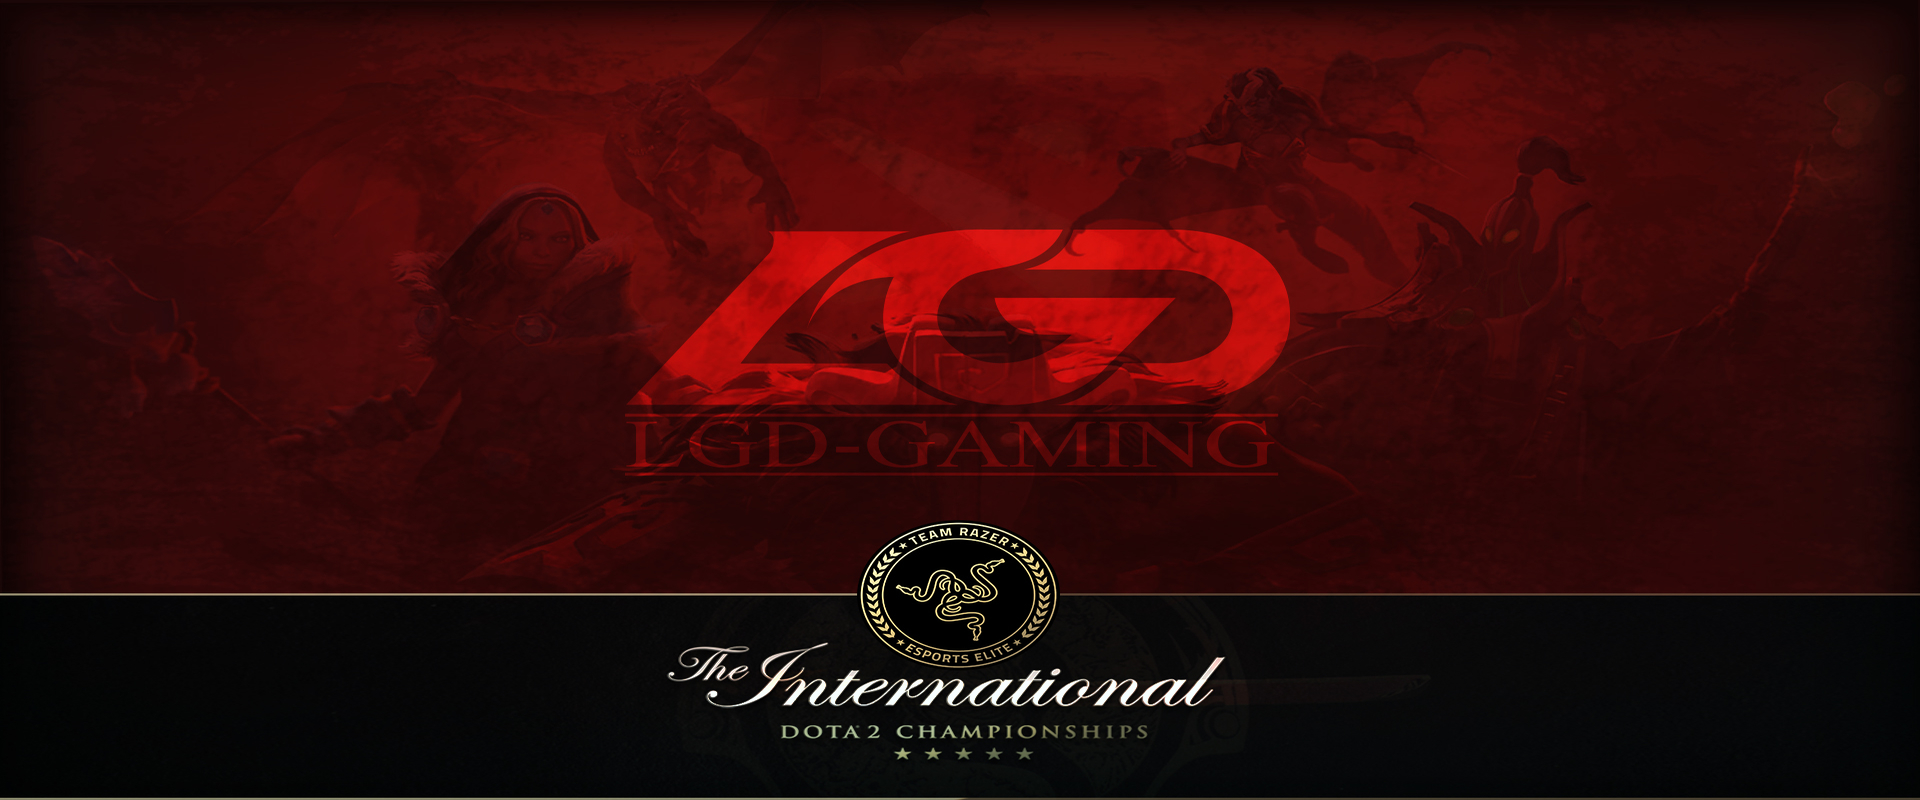 The International 6: LGD Gaming - Kína óriása